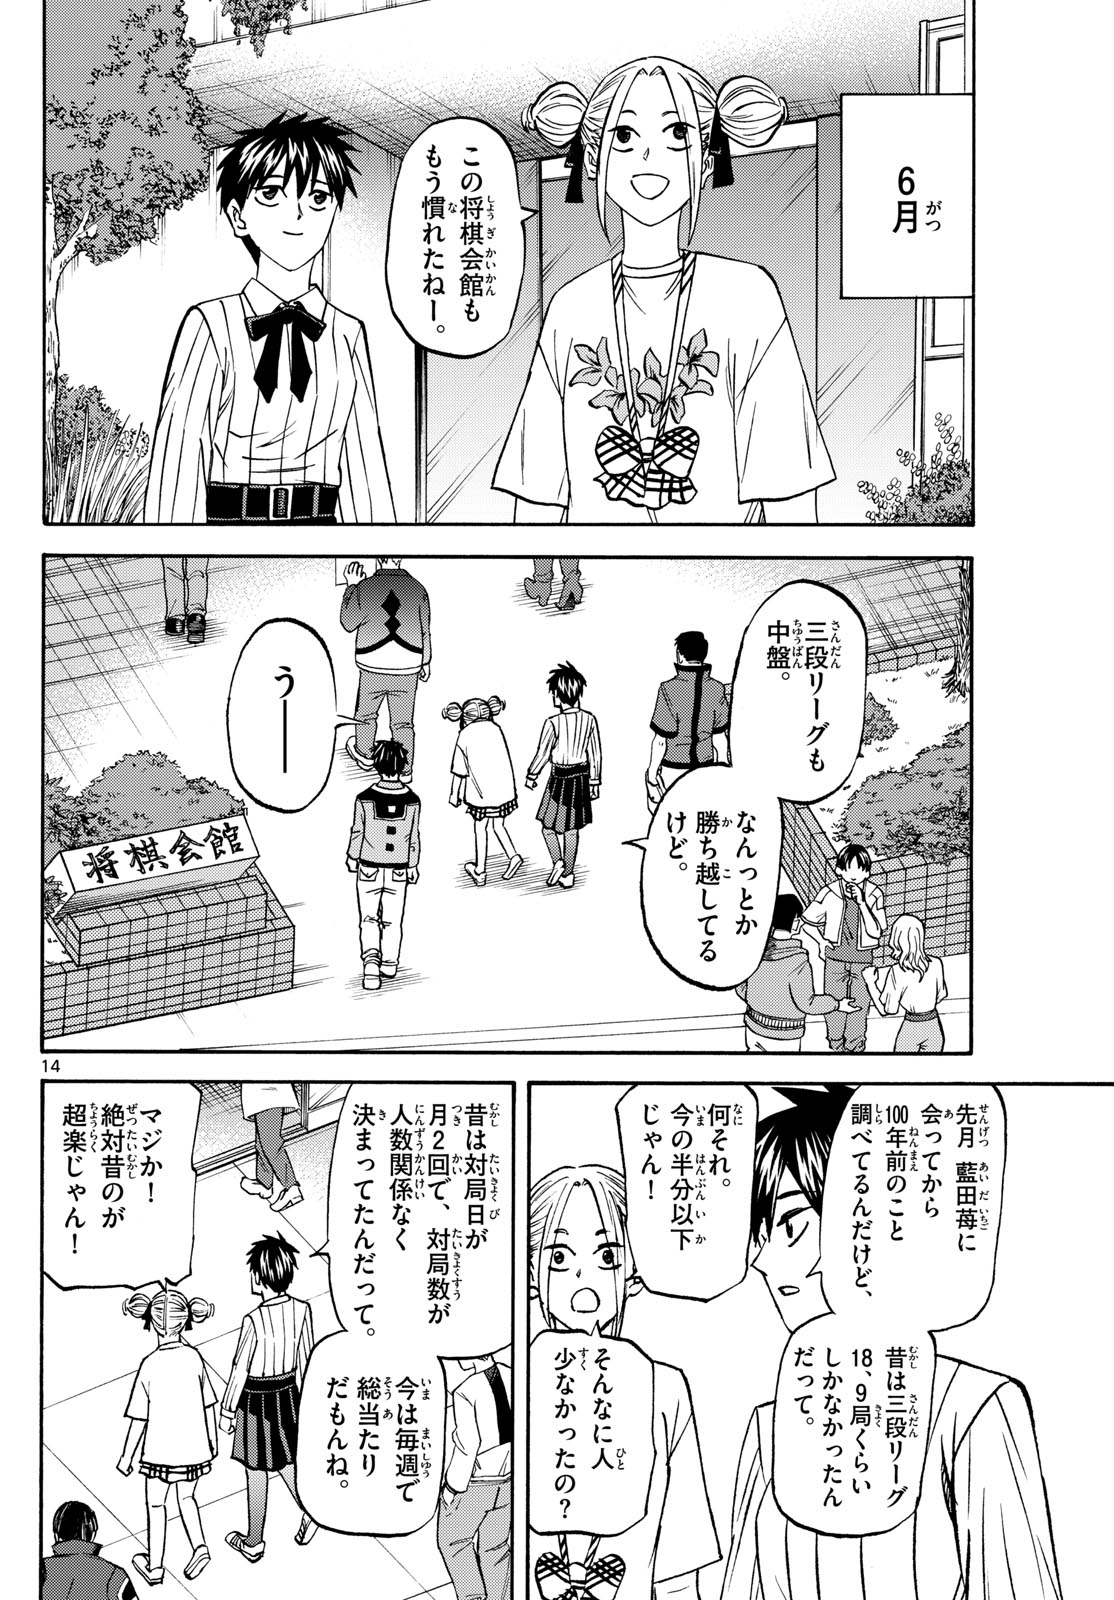 Tatsu to Ichigo - Chapter 188 - Page 14